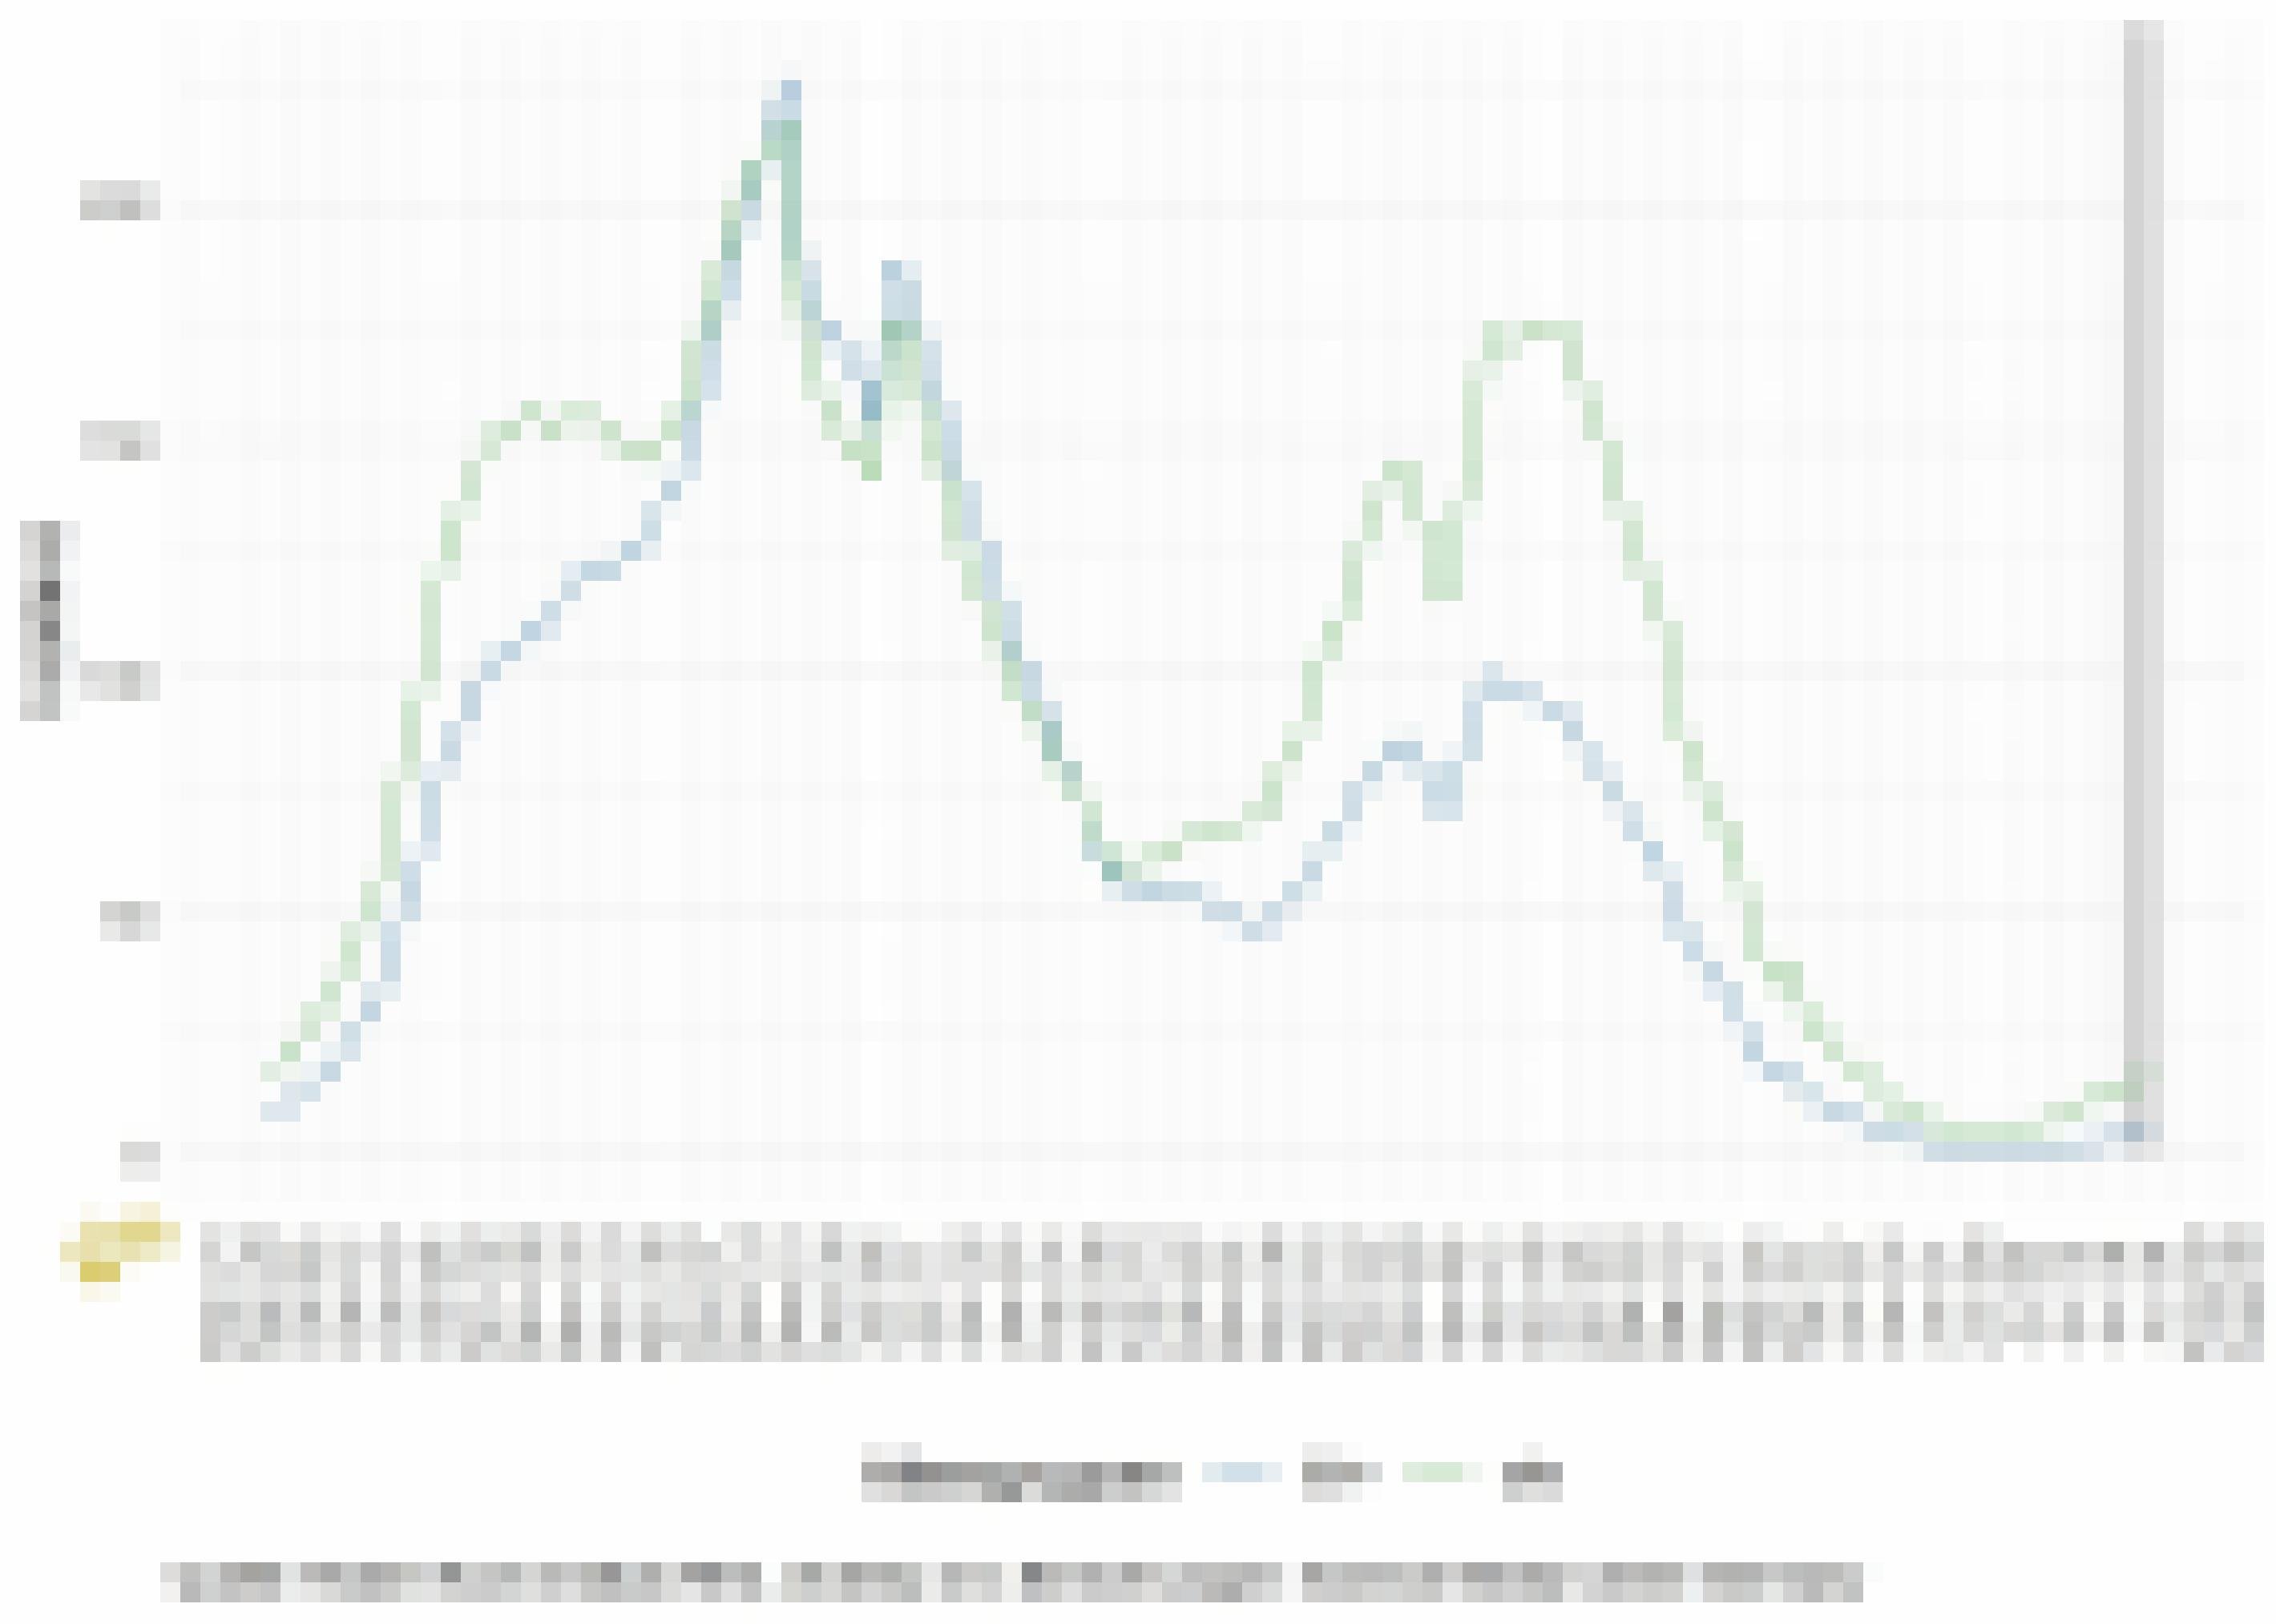 Eine Grafik zeigt die Zahl der Corona-Inzidenzen seit Herbst 2020. Diese sind in der zweiten Welle über 200 gestiegen, erreichten in der dritten Welle 175 und liegen jetzt knapp unter 15.